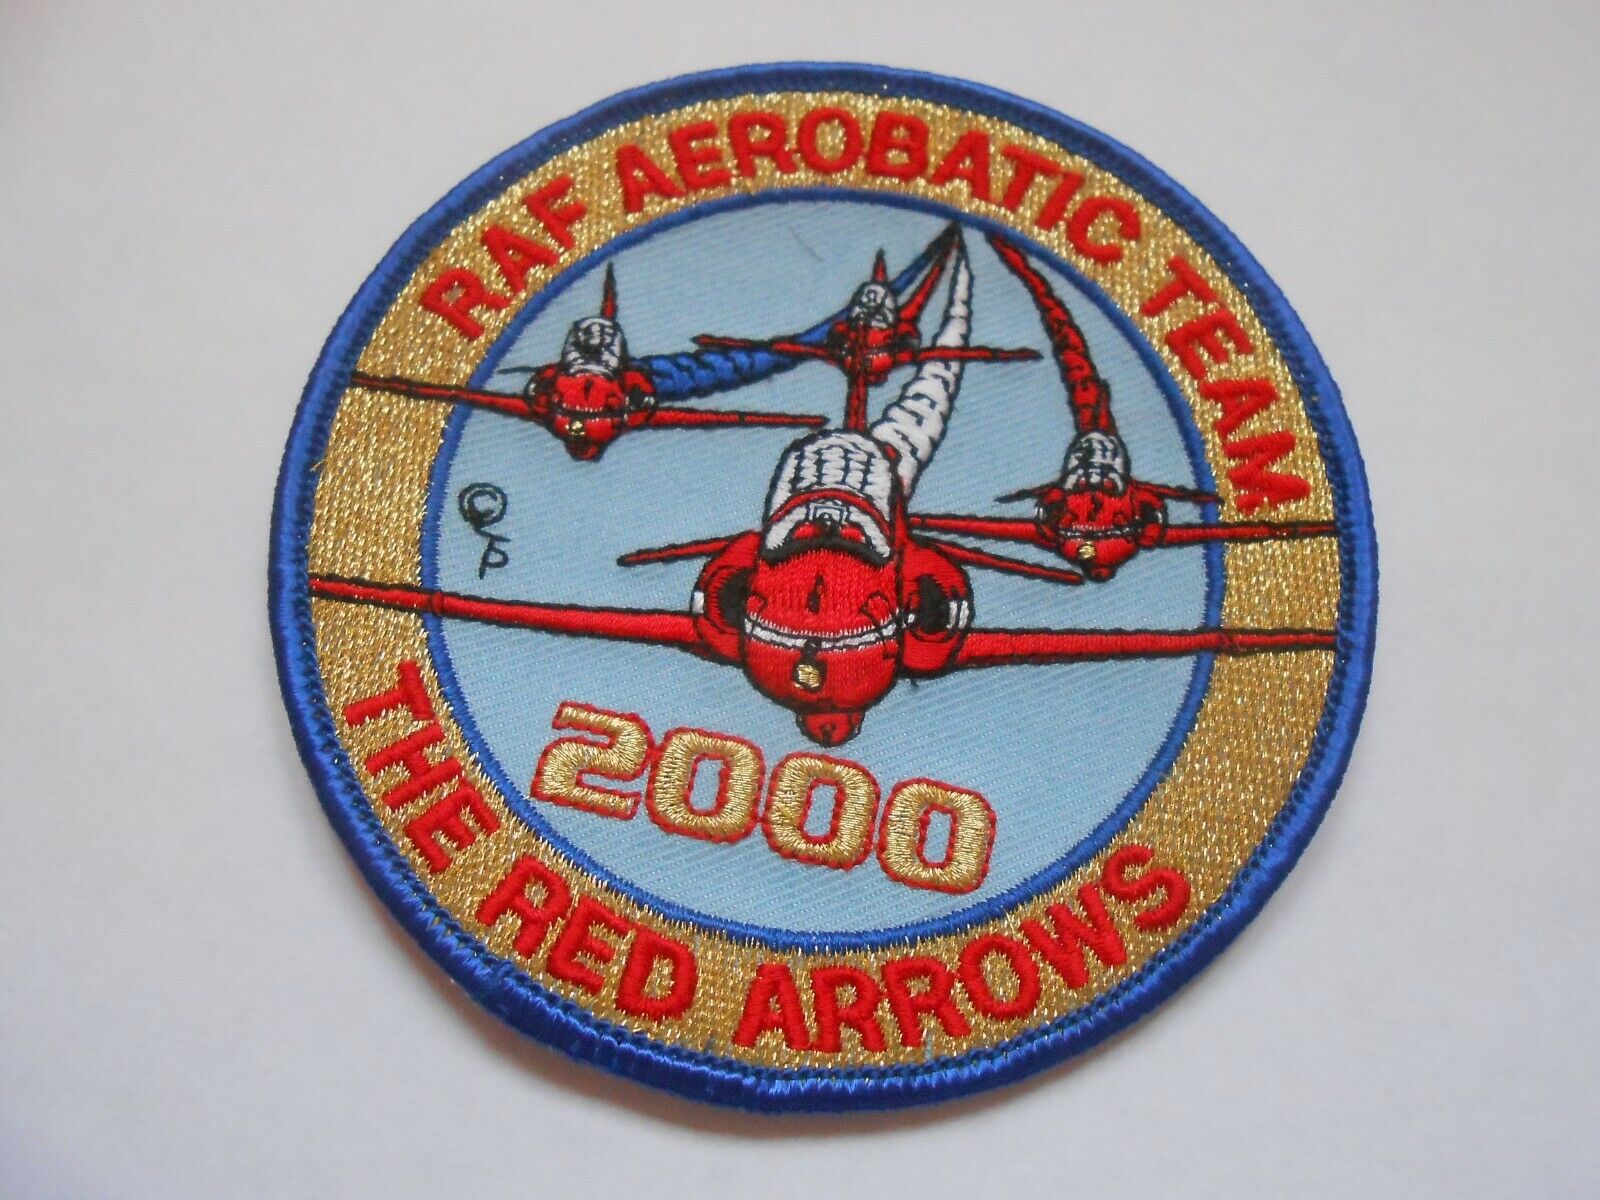 THE RED ARROWS 2000 RAF AEROBATIC TEAM   cloth squadron patch USAF/USN/RAF